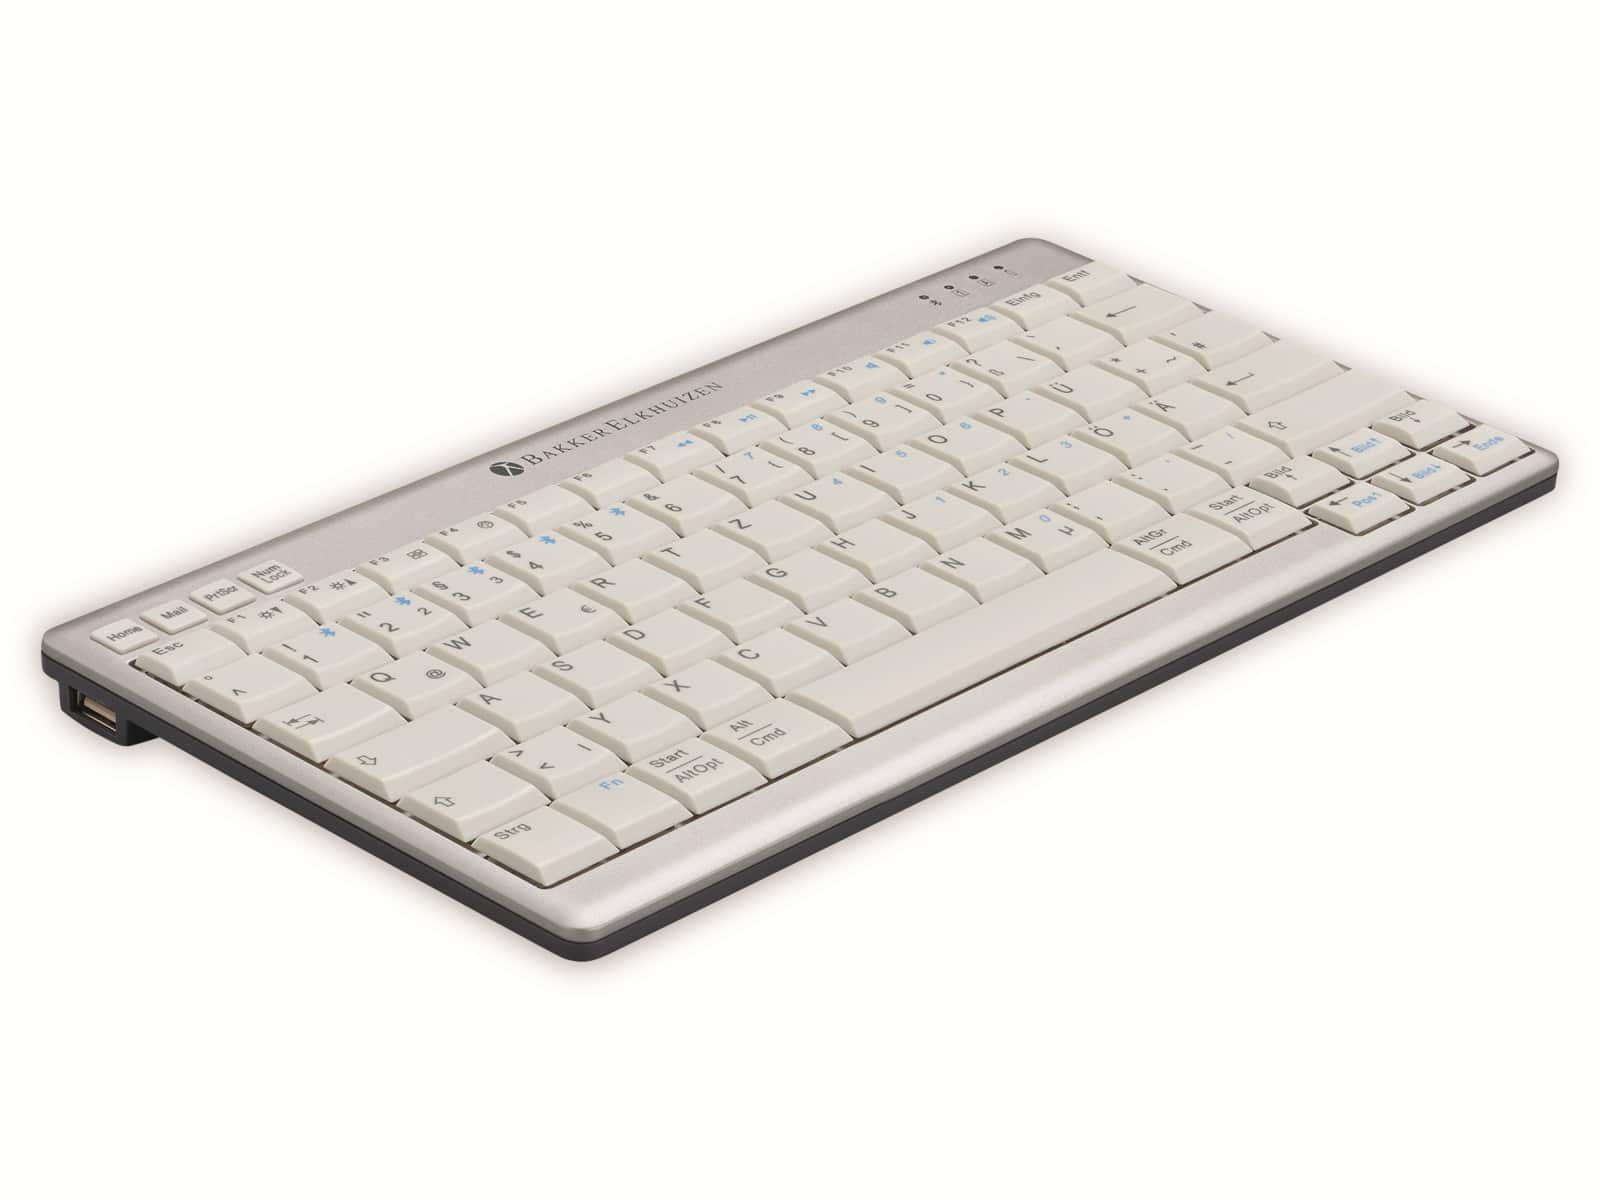 BakkerElkhuizen Funk-Tastatur, Ultraboard 950, silber/weiß, Wireless